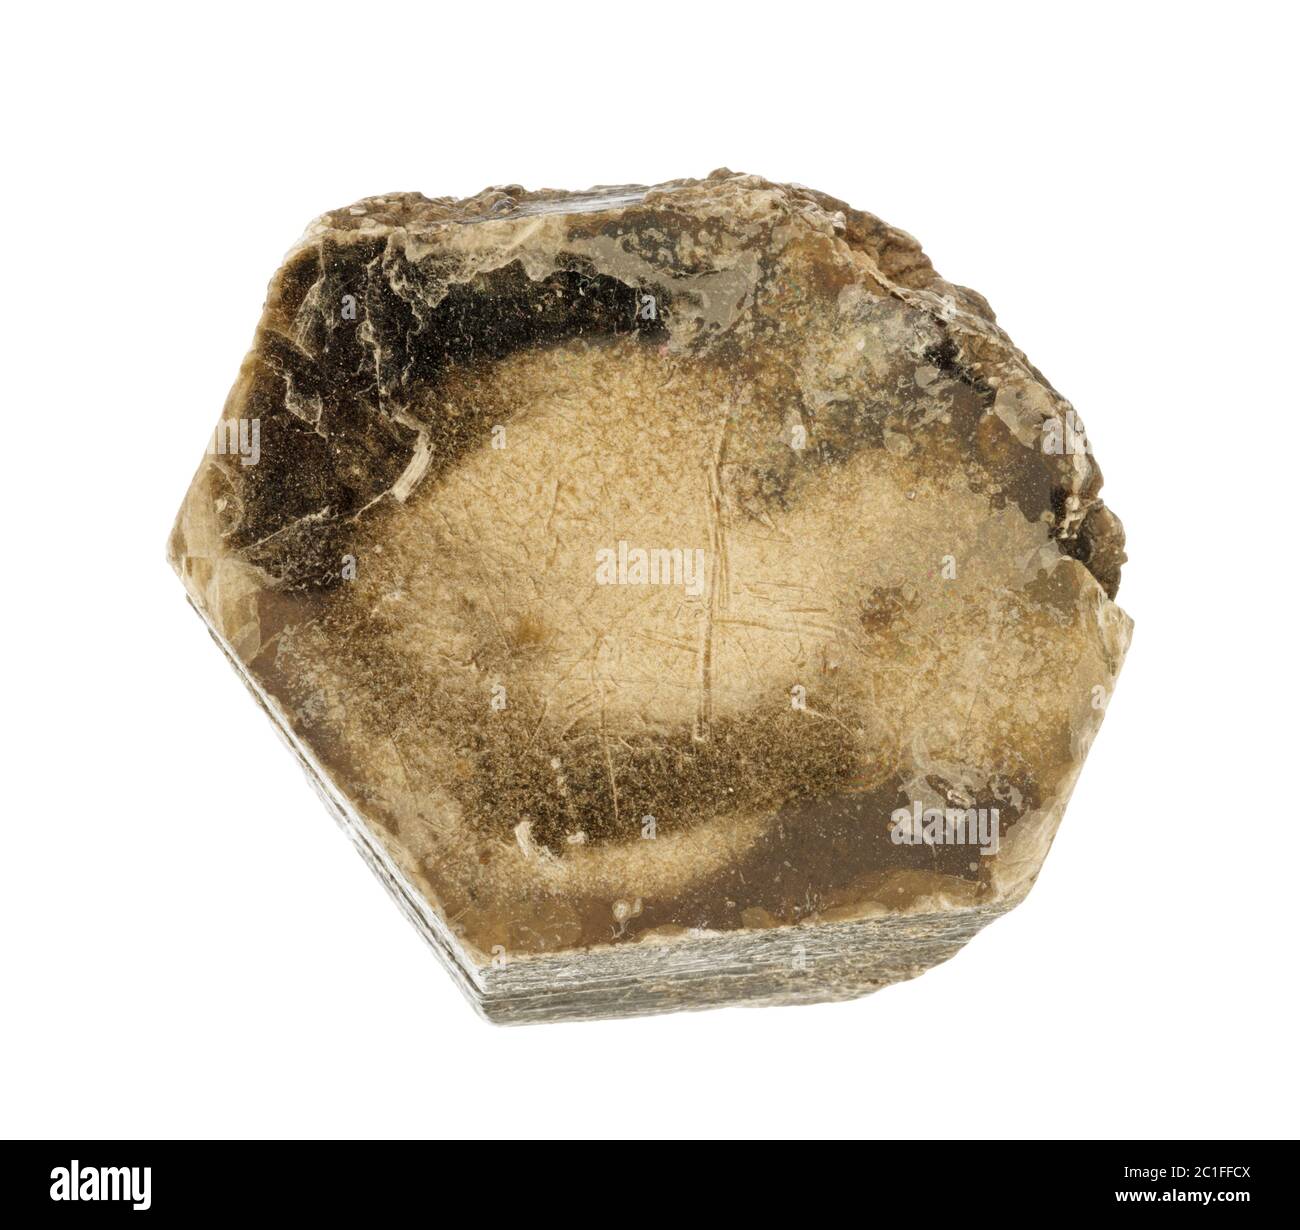 Großer Glimmer Mineralglas isoliert auf weiß Stockfoto